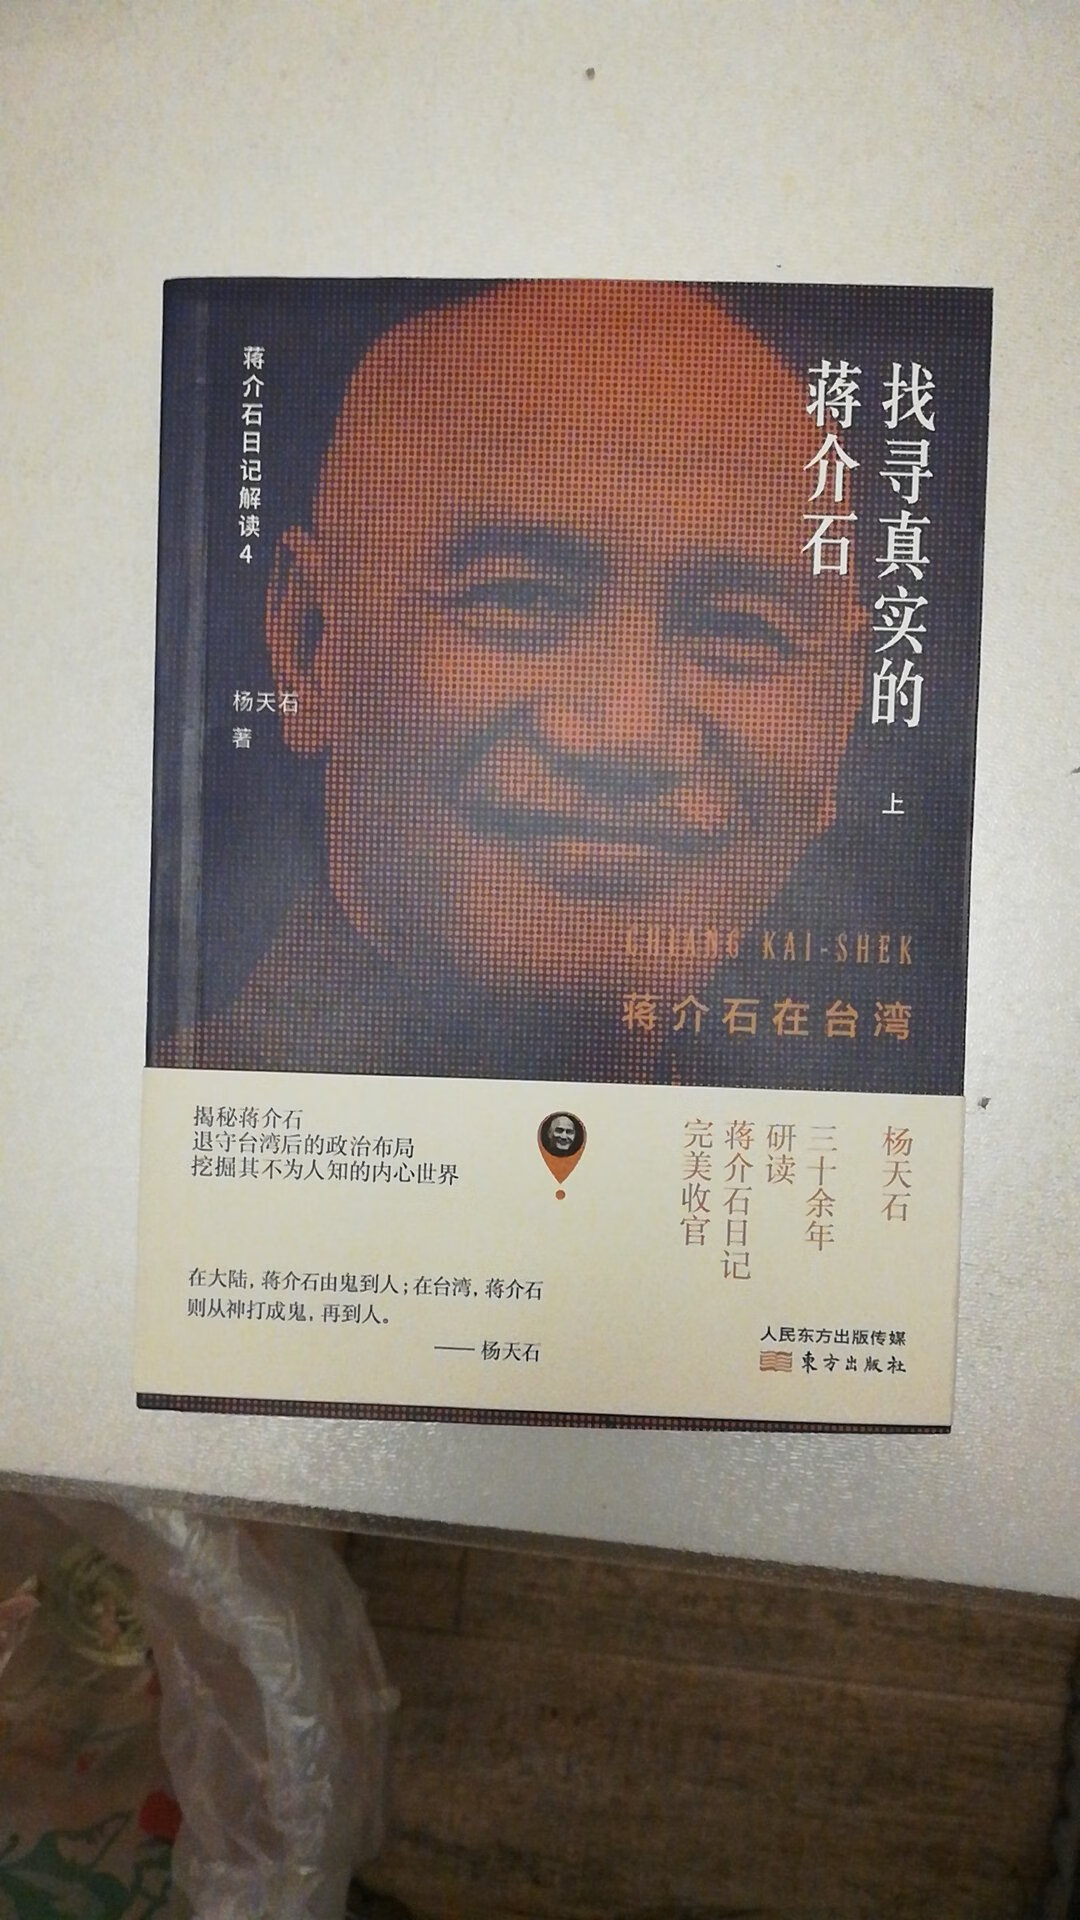 杨天石是现代史研究的大家，特别是对蒋介石的研究系统而深入，值得仔细研读！